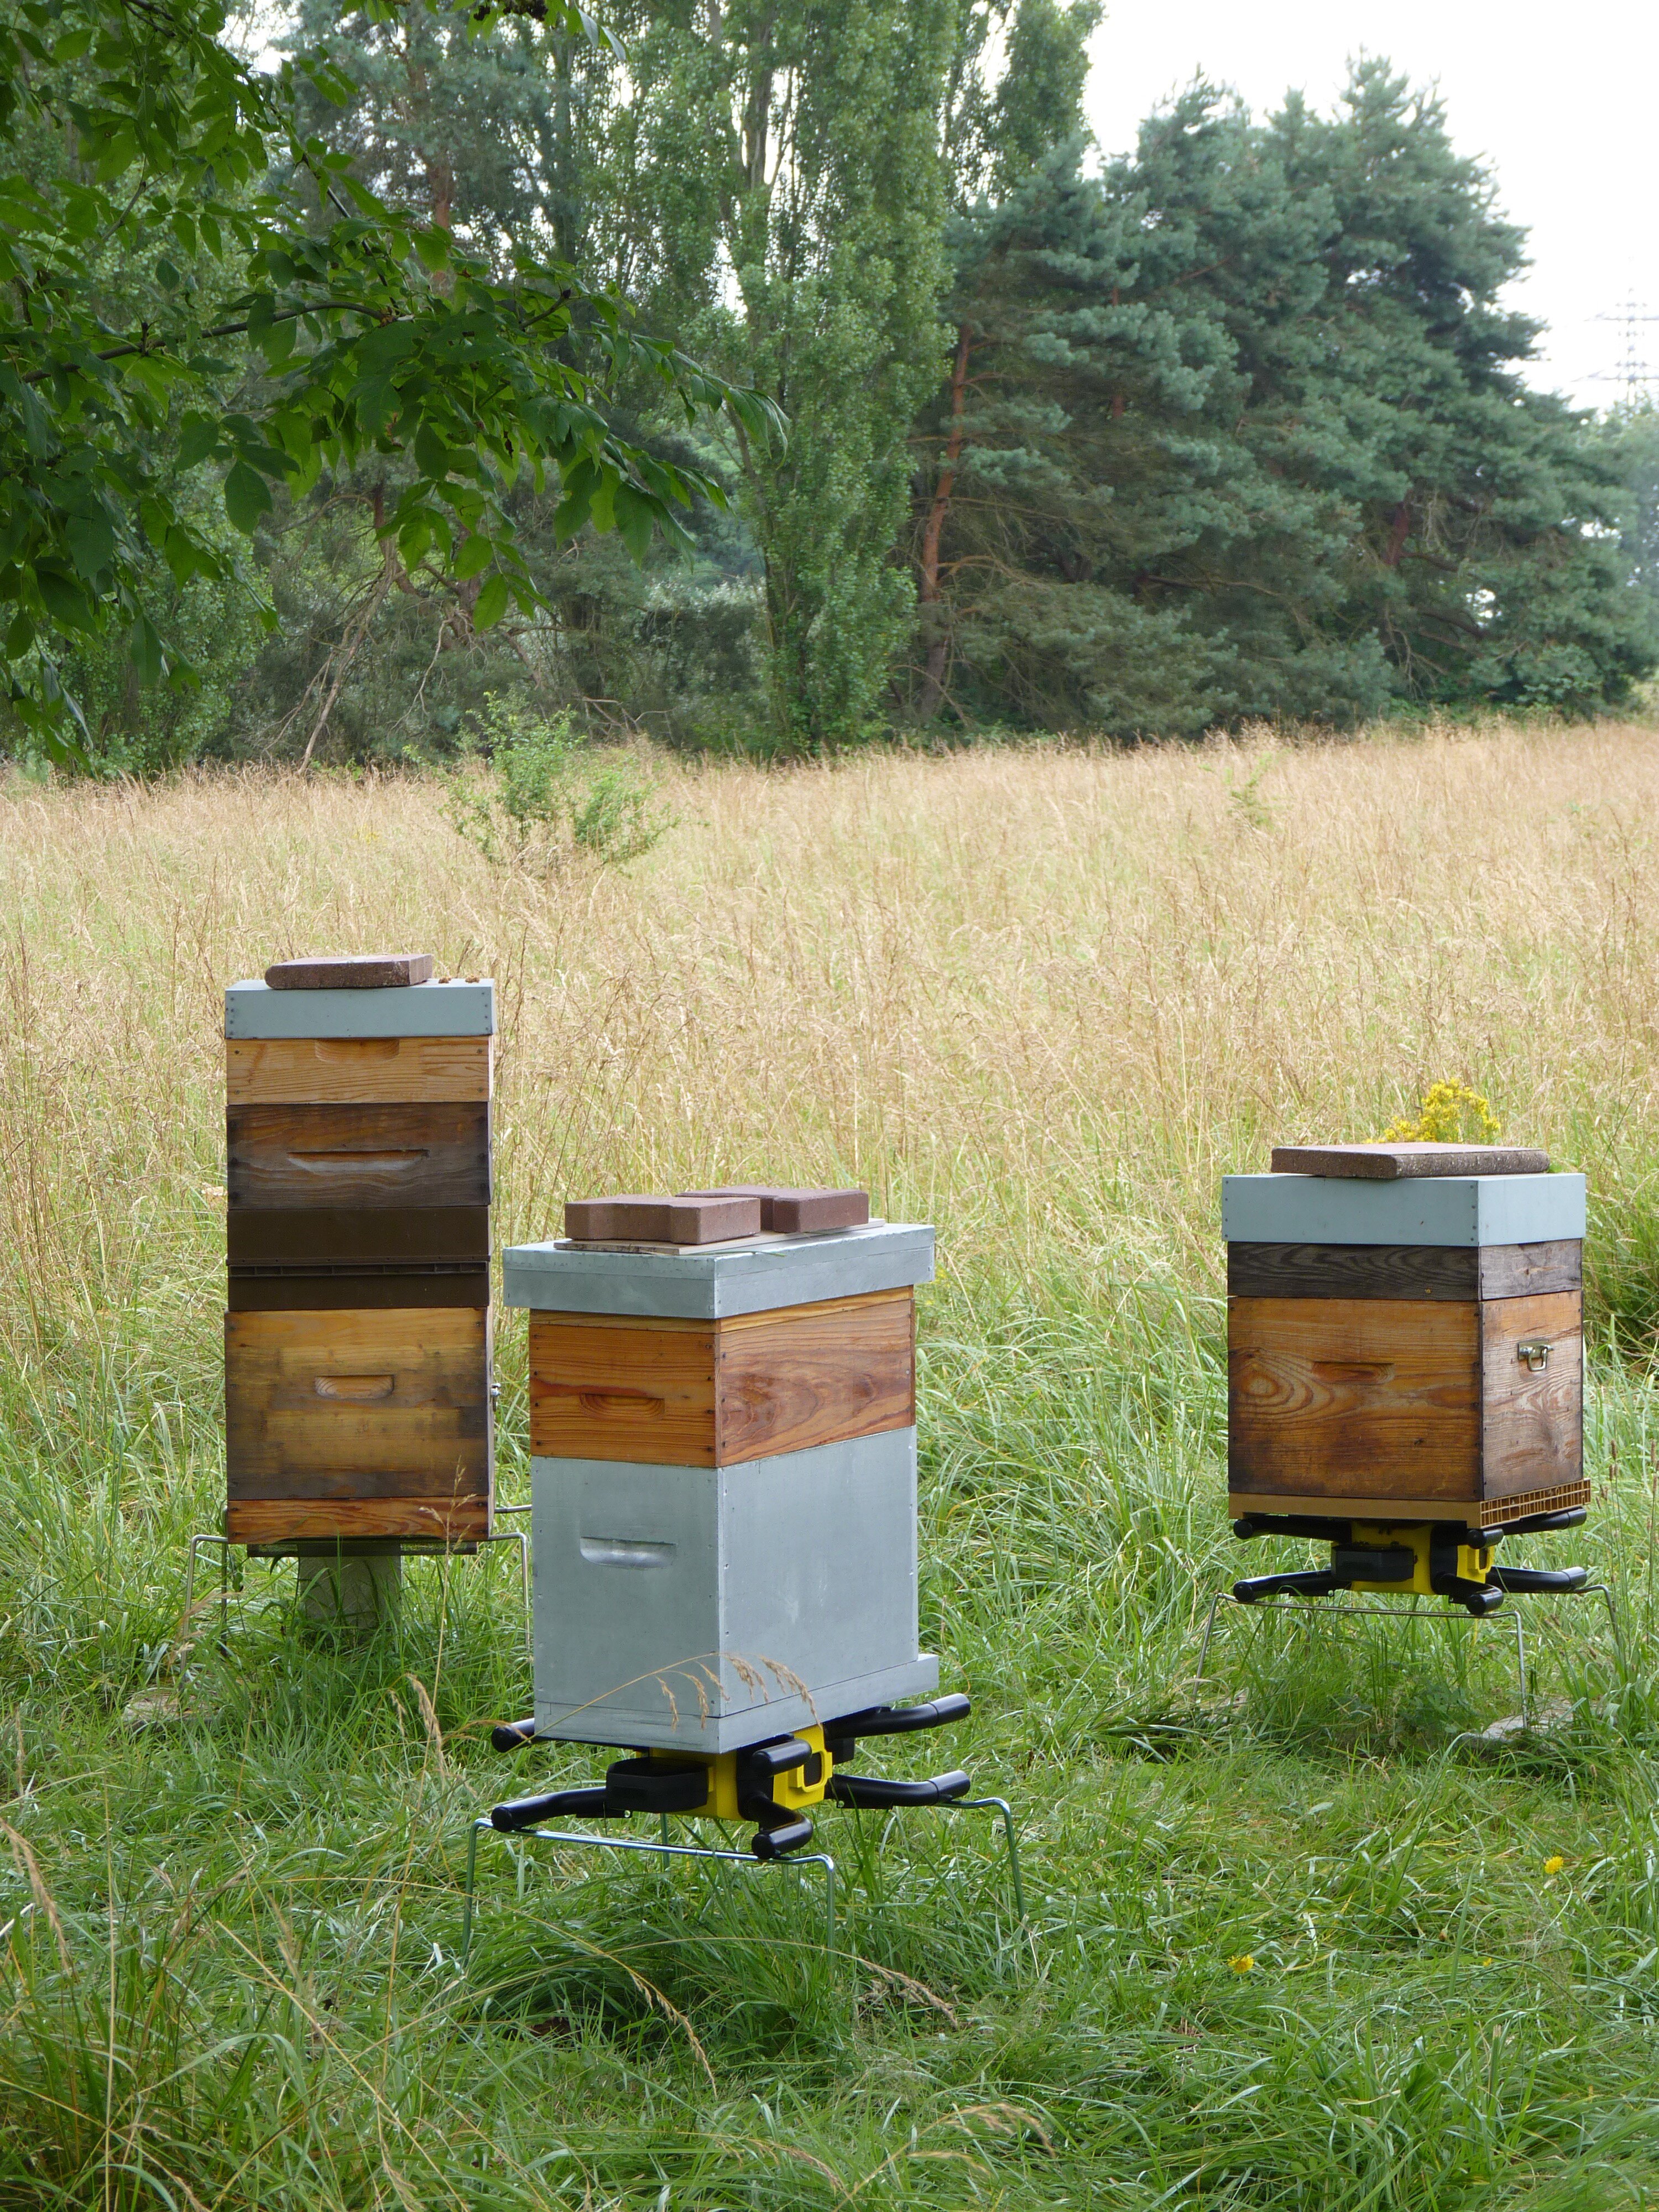 LABEL ABEILLE - La technologie pour sauver les abeilles - Libération